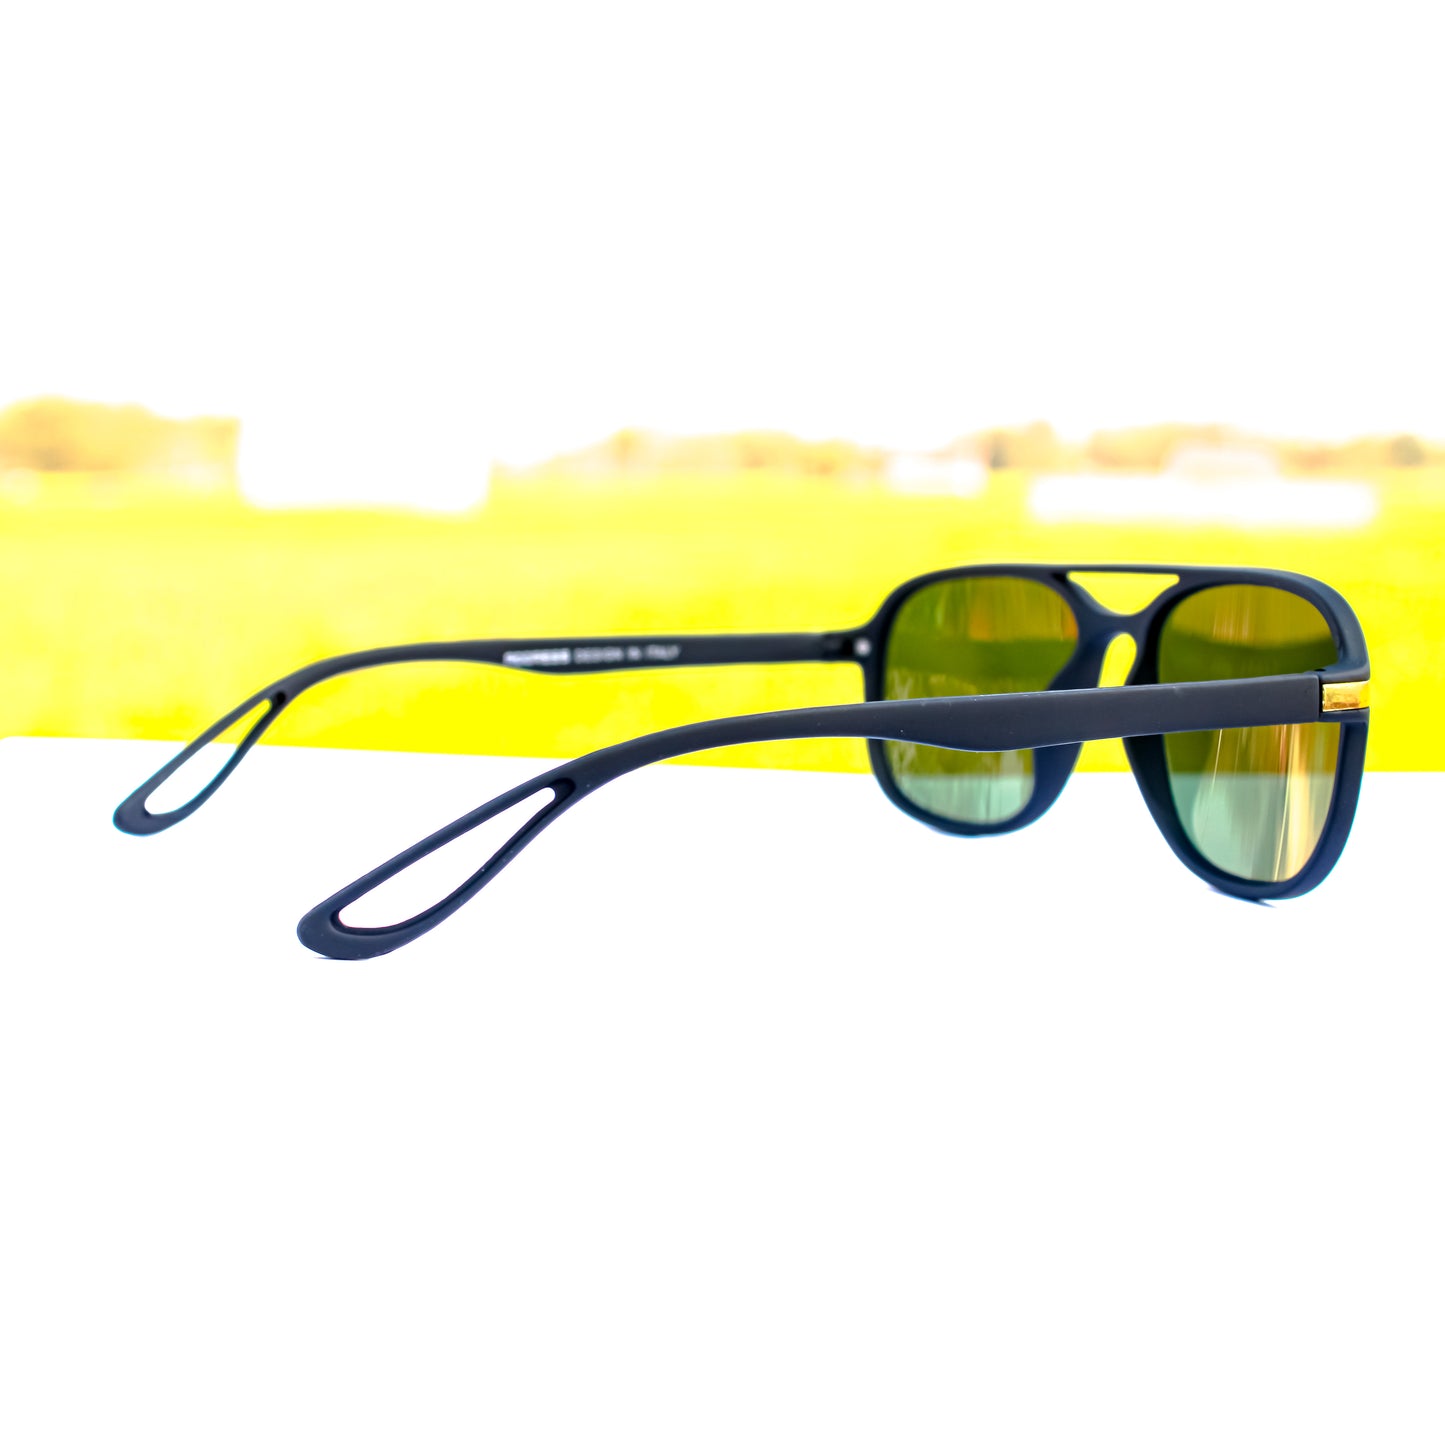 Jiebo Stylish Latest Trendy Desing Sunglasses